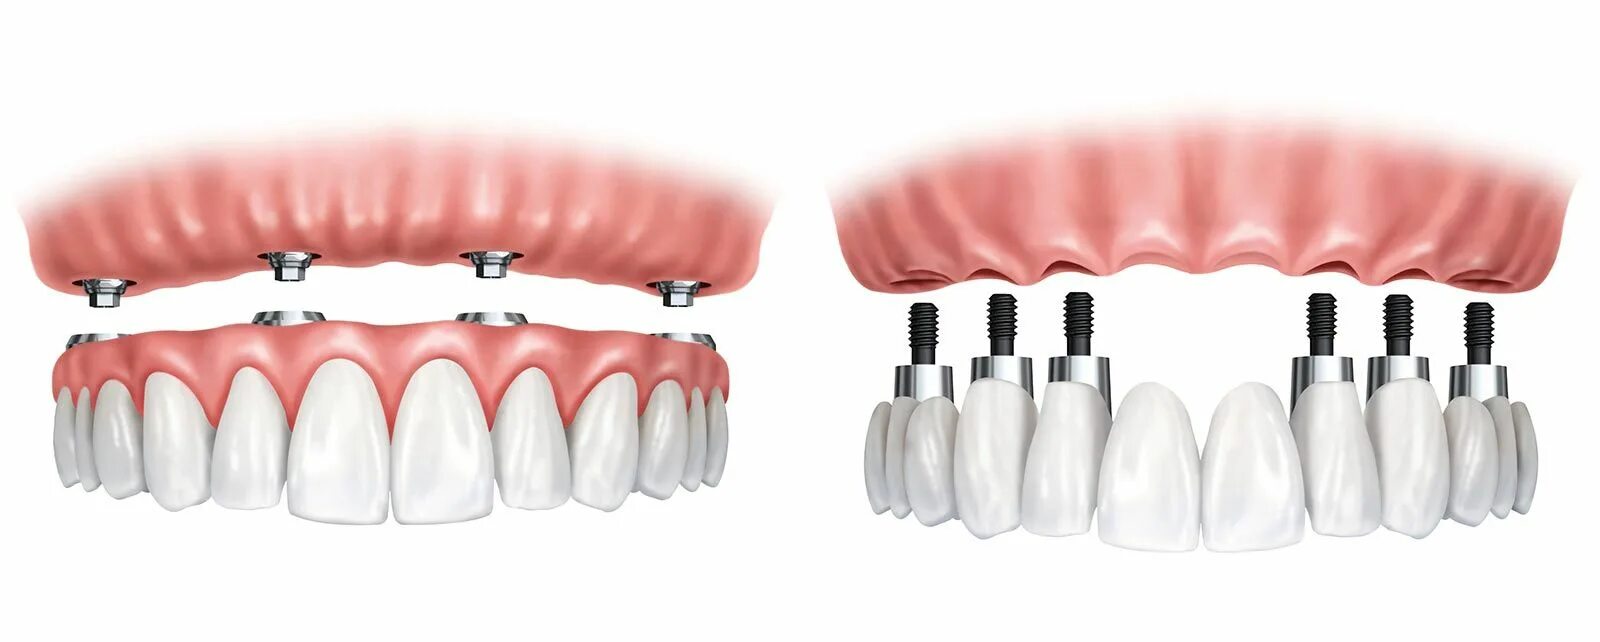 Имплантация зубов all on 6. Имплантологическая кассета Nobel полный набор для all on 4. Имплантация all on 4 челюсть. Технология имплантации зубов all-on-4.